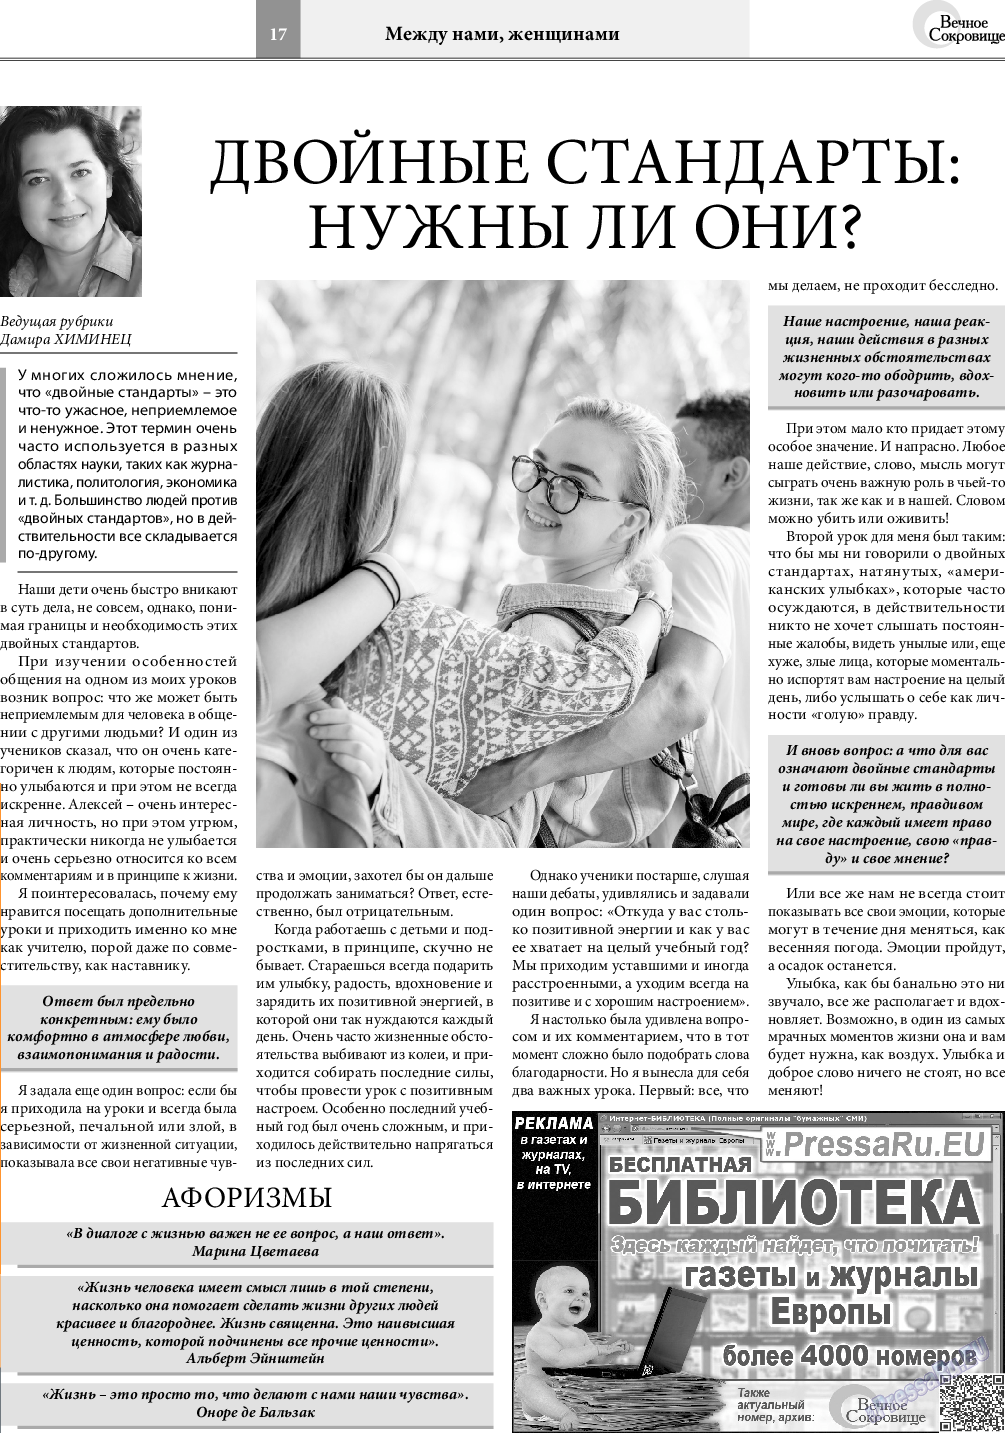 Вечное сокровище, газета. 2019 №5 стр.17